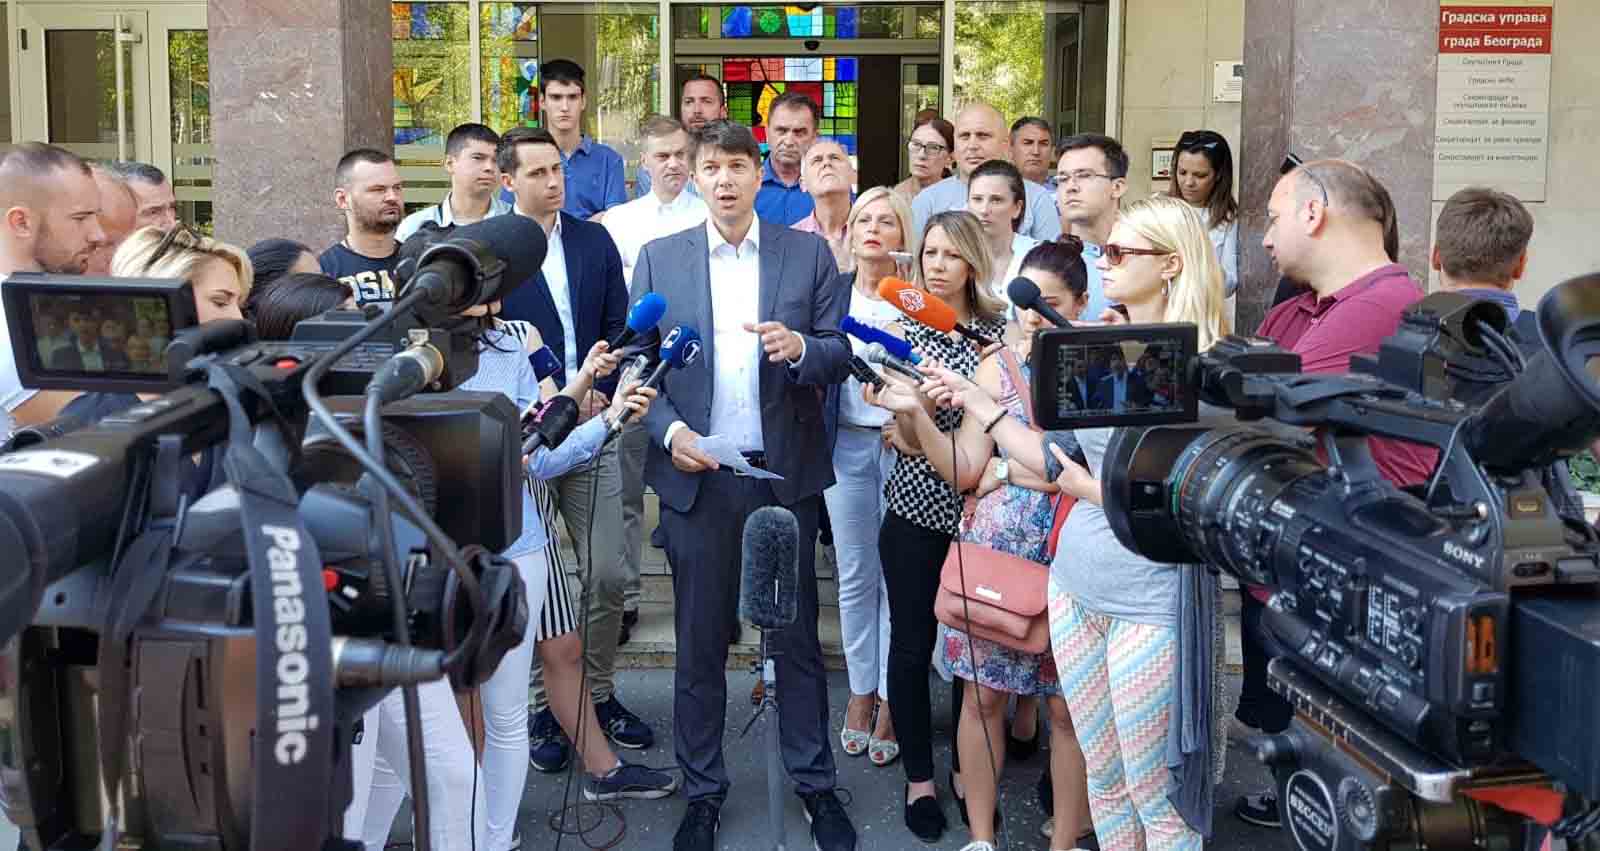 Јовановић: Измене Статута Београда ограничавају одборнике у контроли власти